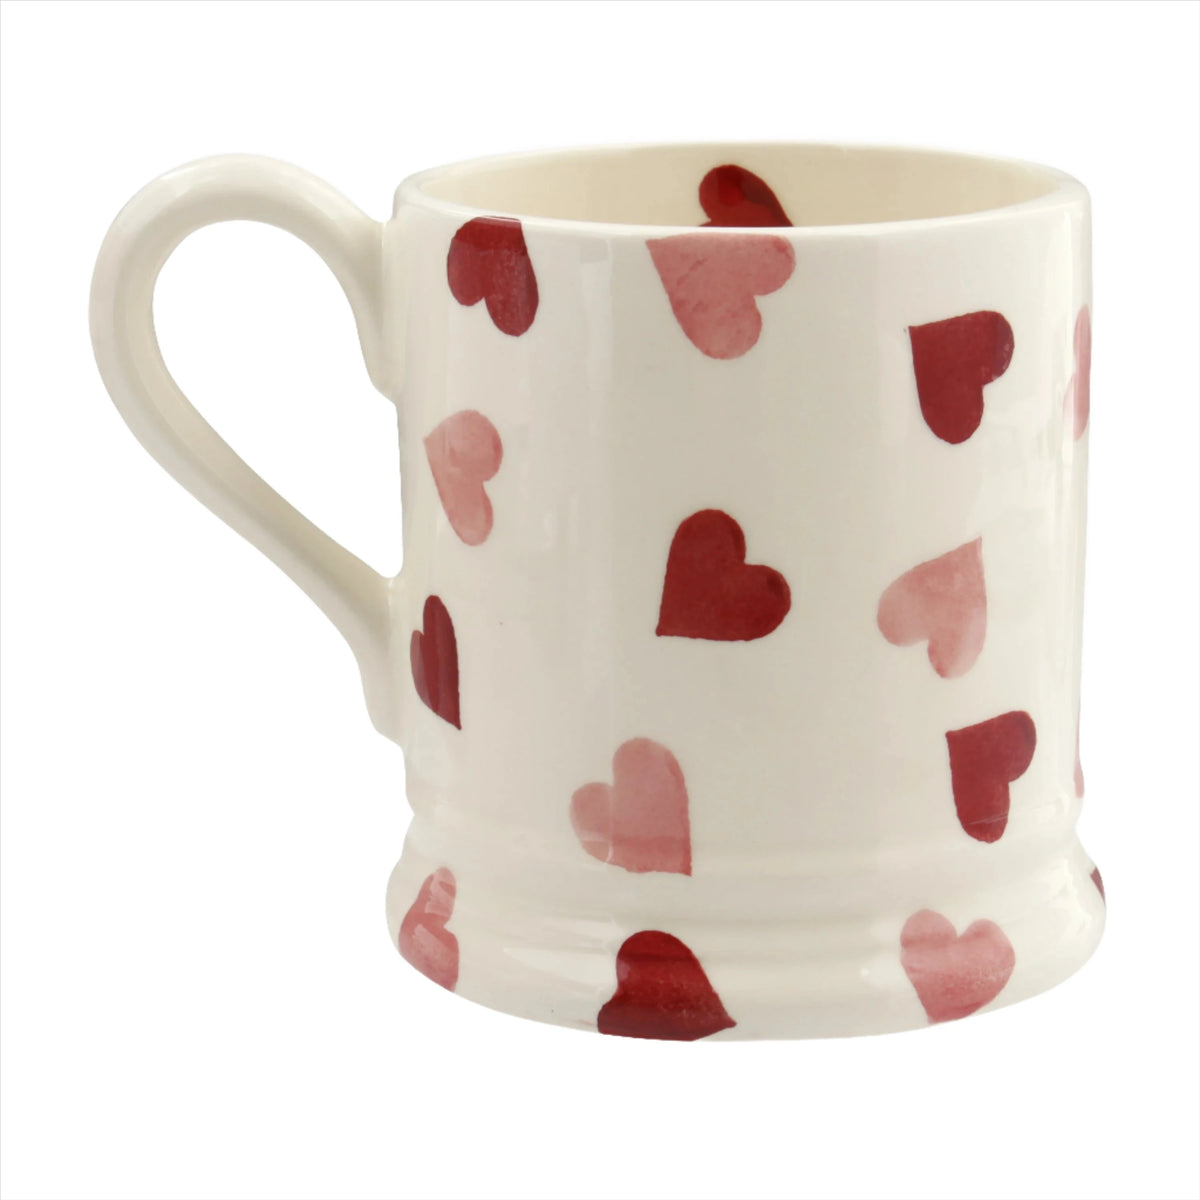 Pink Hearts Mummy 1/2 Pint Mug